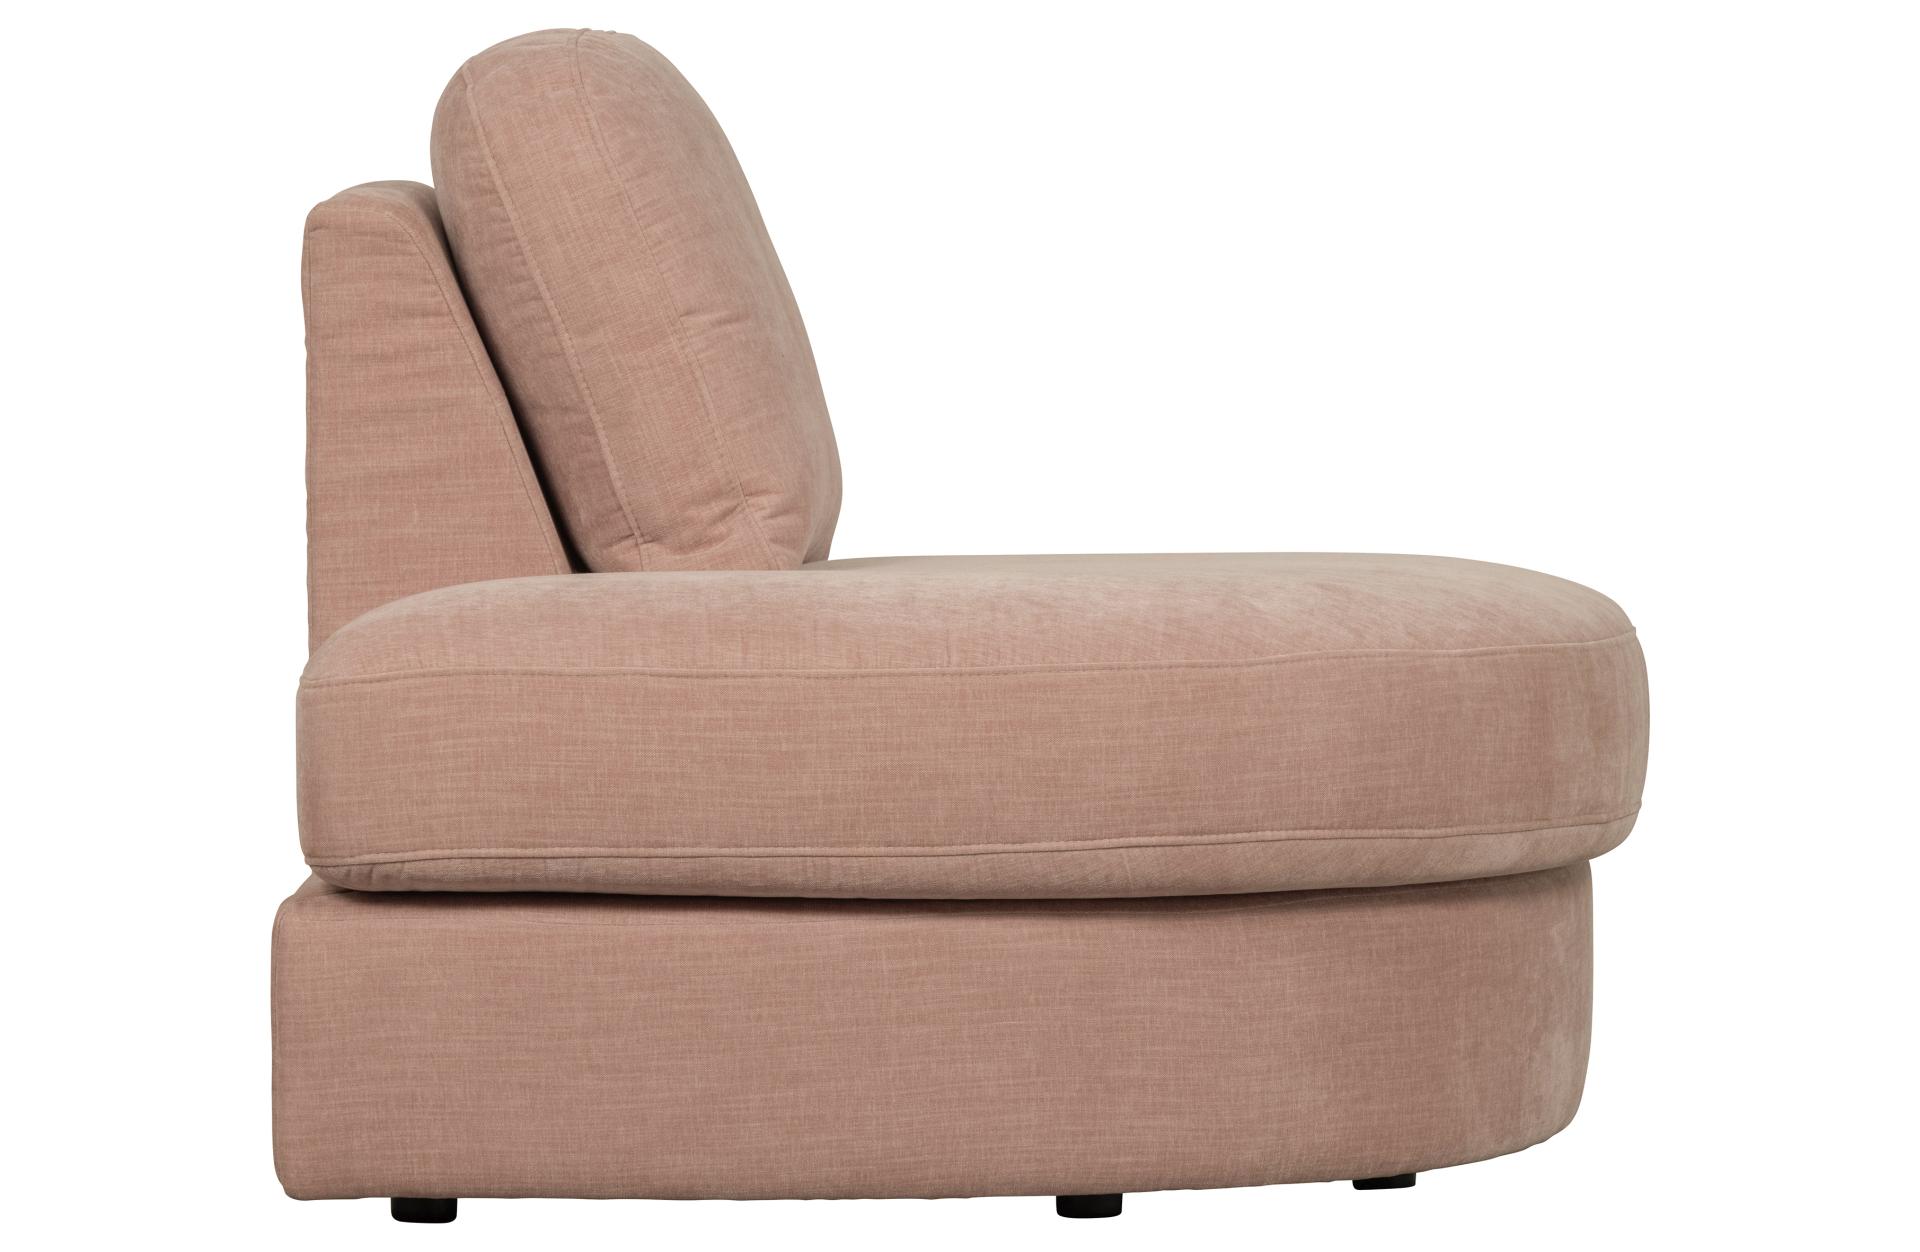 Das Modulsofa Family überzeugt mit seinem modernen Design. Das 1-Seat Eck Element mit der Ausführung Links wurde aus Gewebe-Stoff gefertigt, welcher einen einen rosa Farbton besitzen. Das Gestell ist aus Metall und hat eine schwarze Farbe. Das Element hat